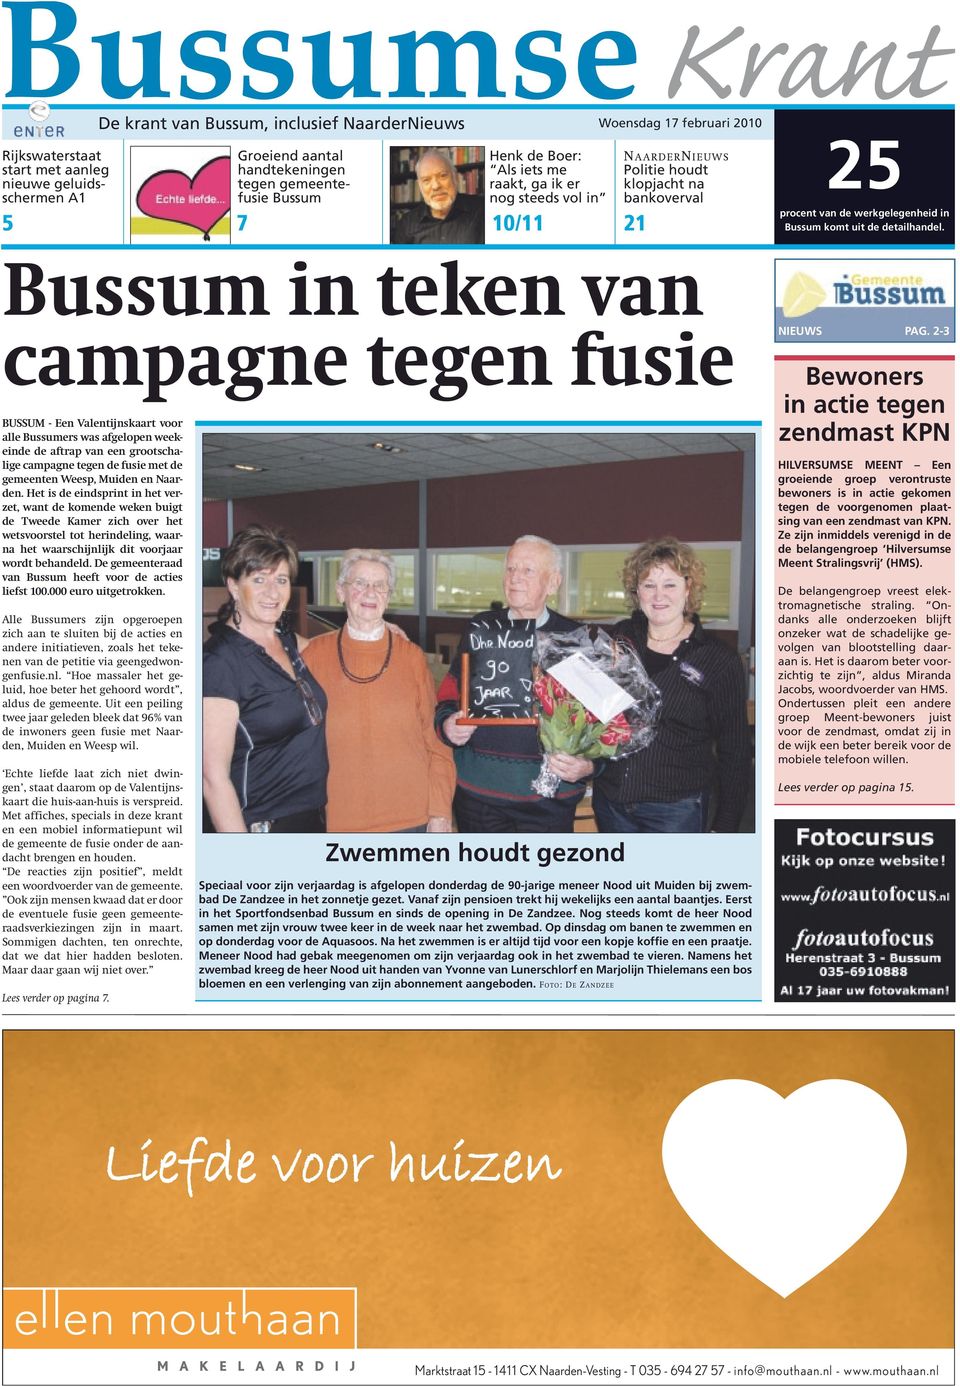 Bussum in teken van campagne tegen fusie BUSSUM - Een Valentijnskaart voor alle Bussumers was afgelopen weekeinde de aftrap van een grootschalige campagne tegen de fusie met de gemeenten Weesp,